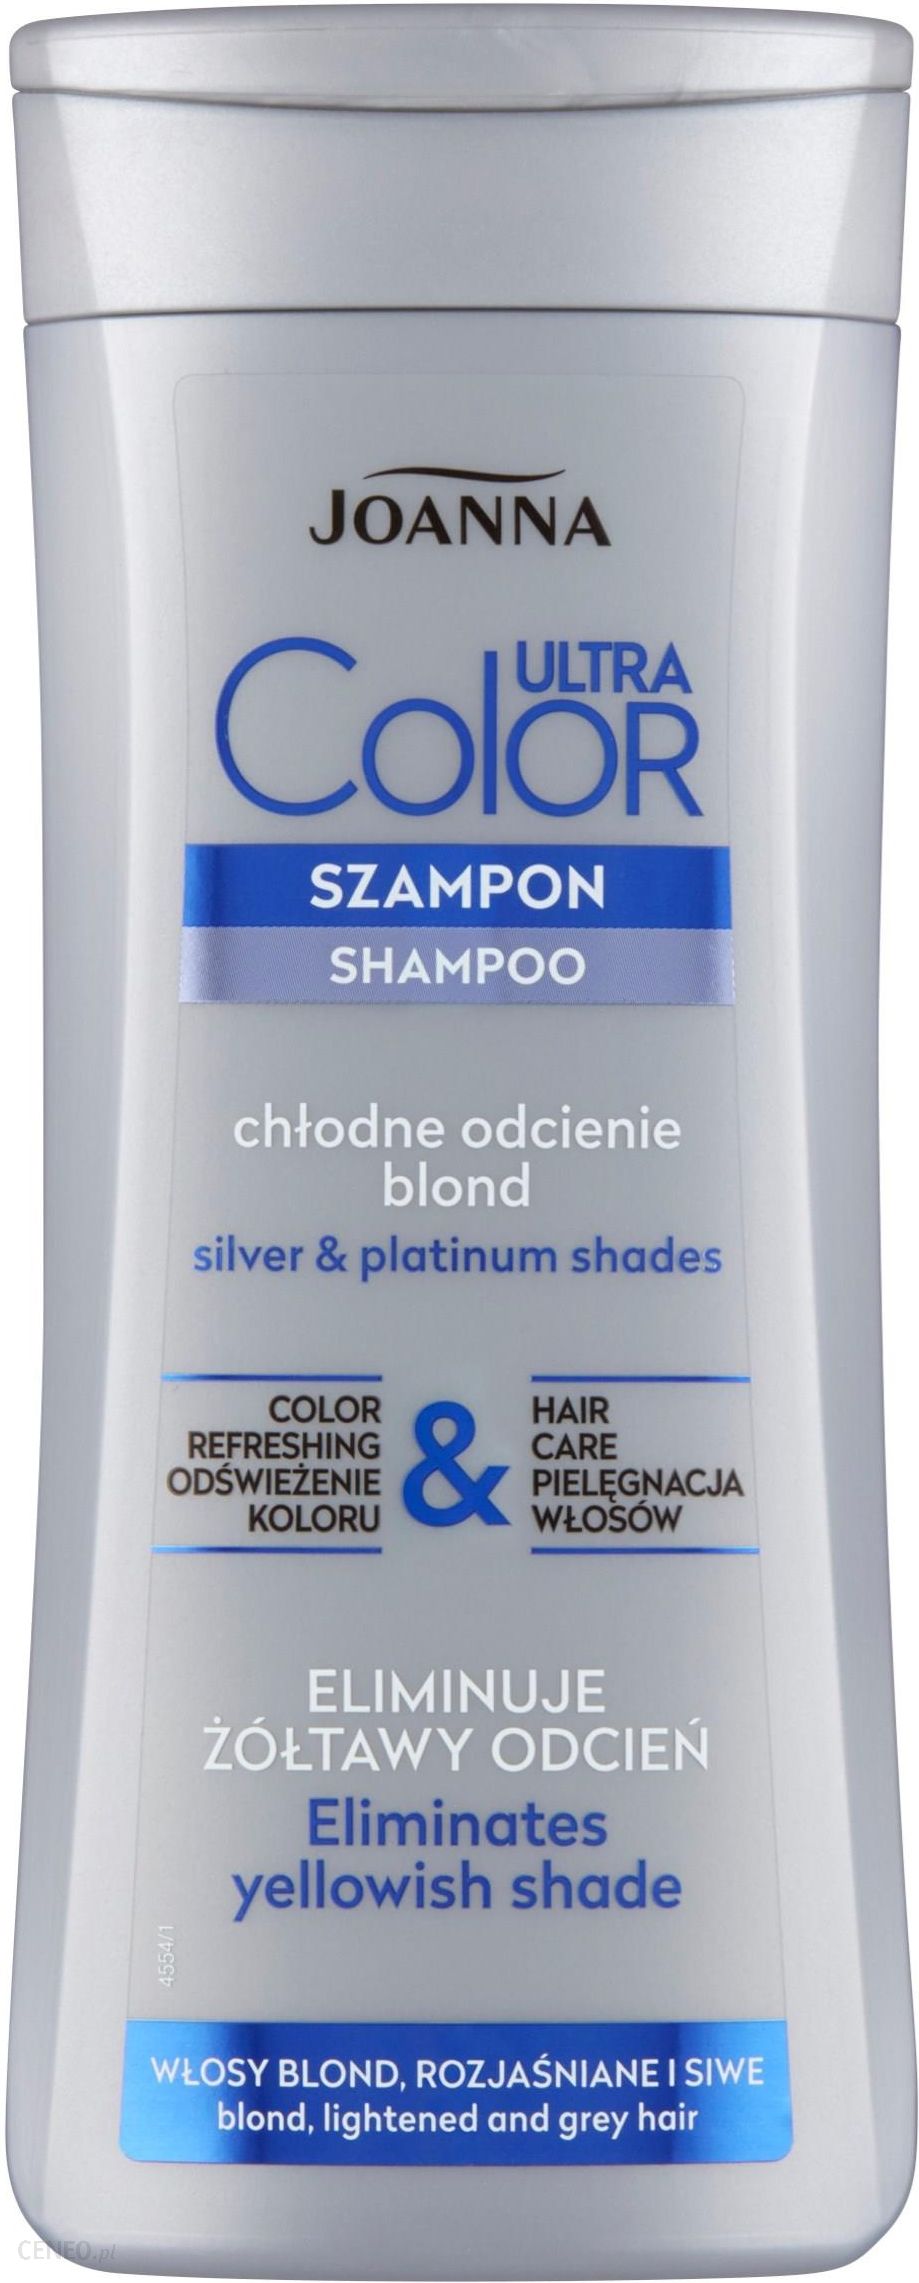 jaki polecacie szampon na siwe włosy i gdzie kupic